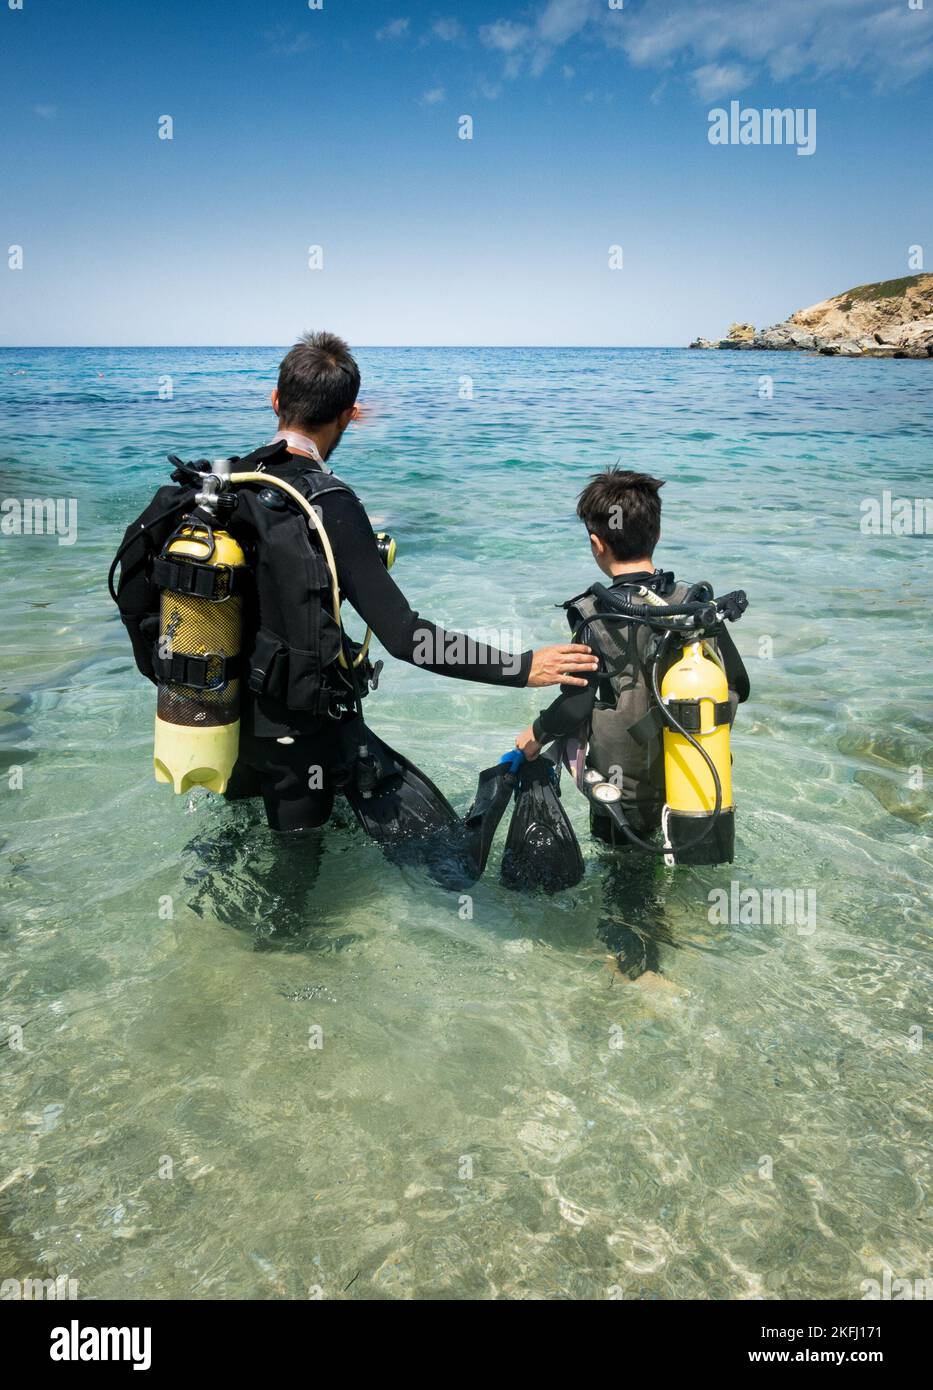 Vater und Sohn tragen Tauchausrüstung und betrachten die Aussicht, während sie an sonnigen Tagen in der Meereslandschaft und gegen den blauen Himmel stehen Stockfoto